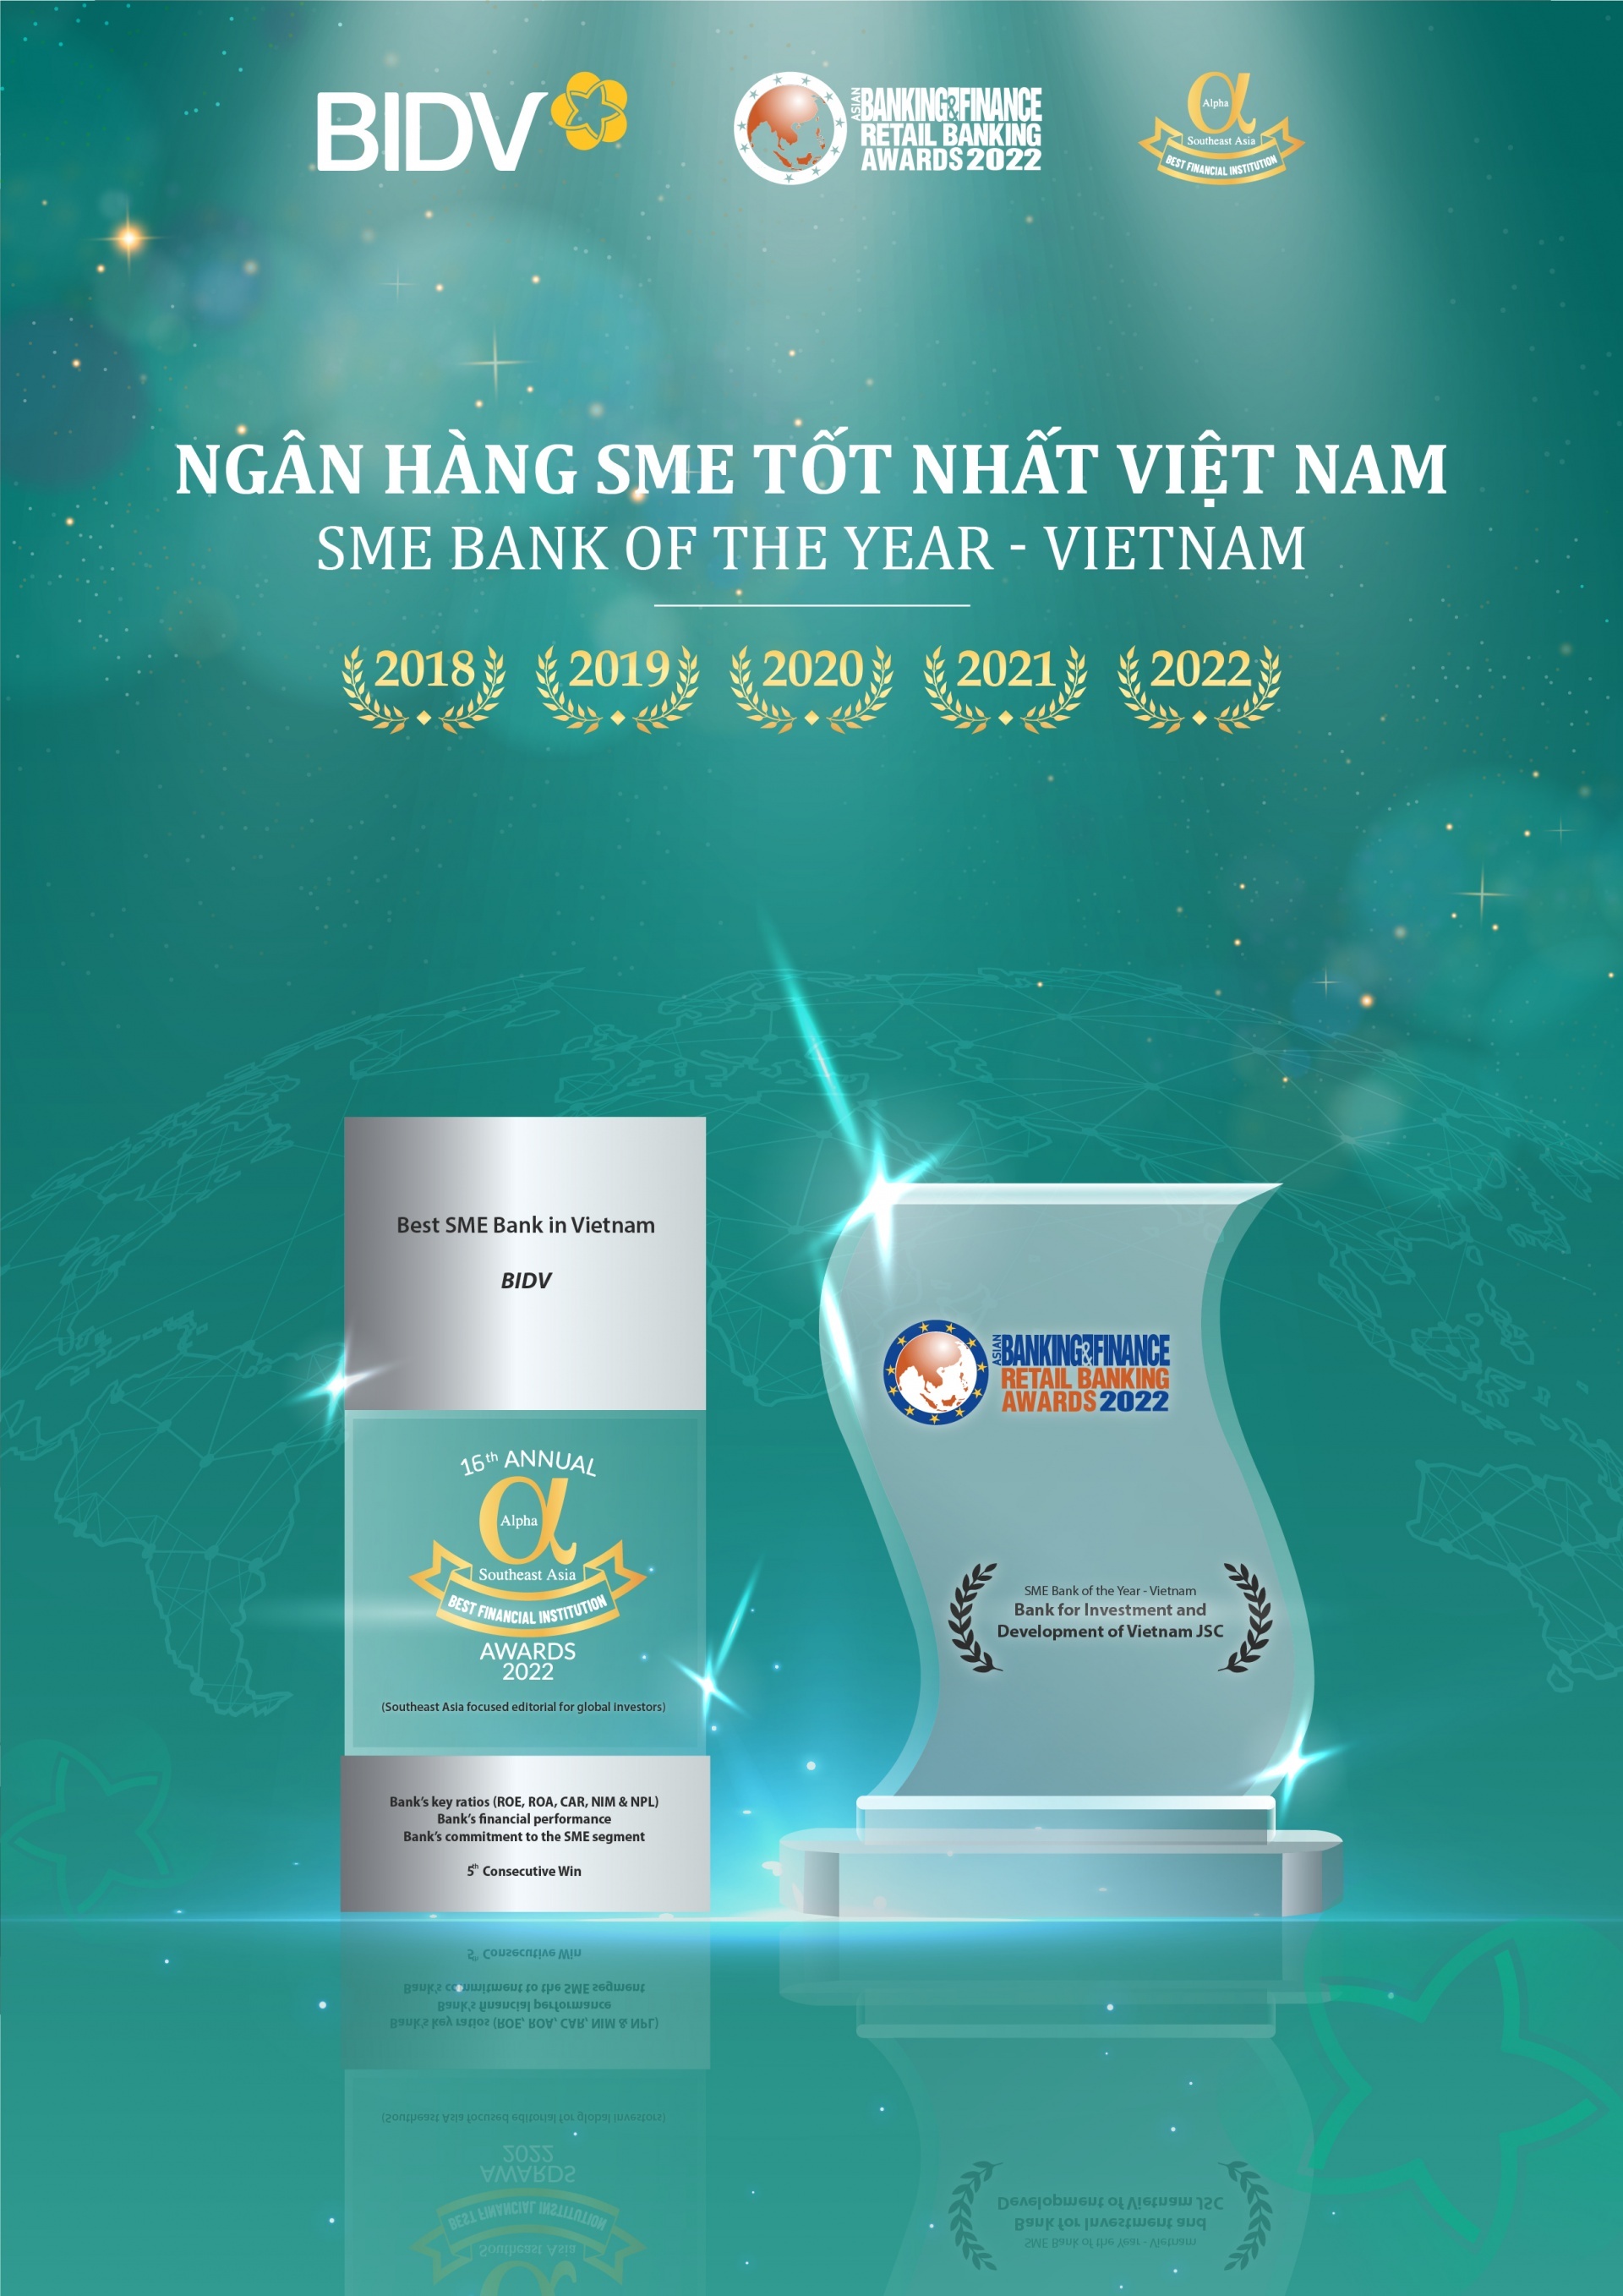 BIDV nhận cú đúp giải thưởng “Ngân hàng SME tốt nhất Việt Nam” lần thứ 5 liên tiếp